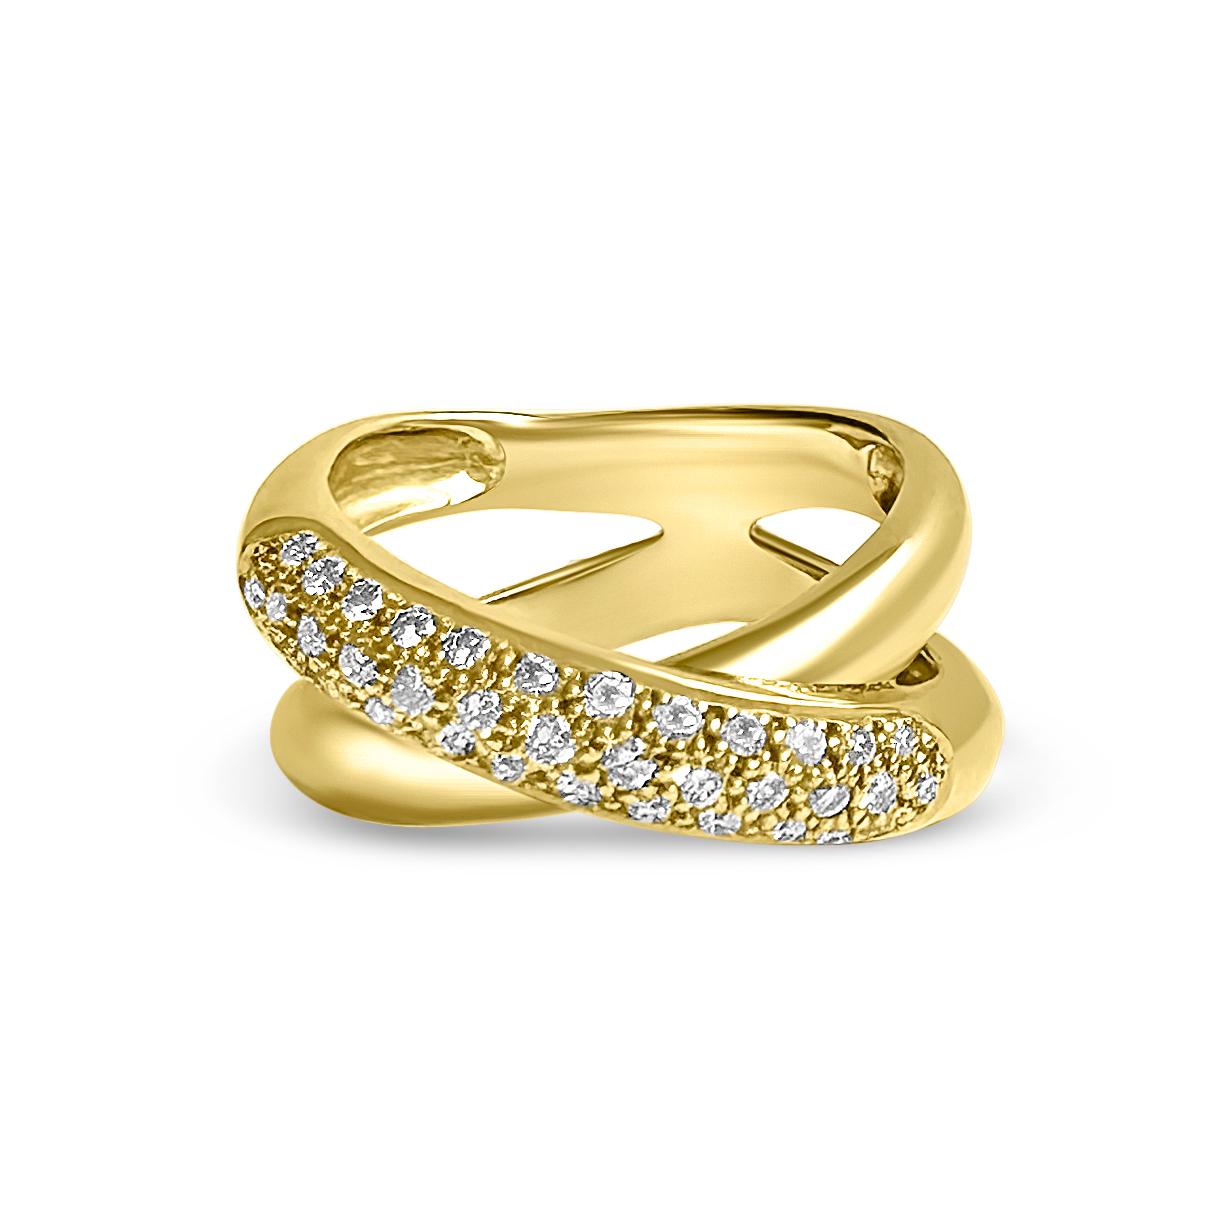 Bague 14KY avec 37 diamants ronds de 1.4mm 0.50ct G-H VS

Embrassez l'éclat avec la bague en or jaune 14 carats de Manart Gold & Diamond Jewelry. Le design classique en 